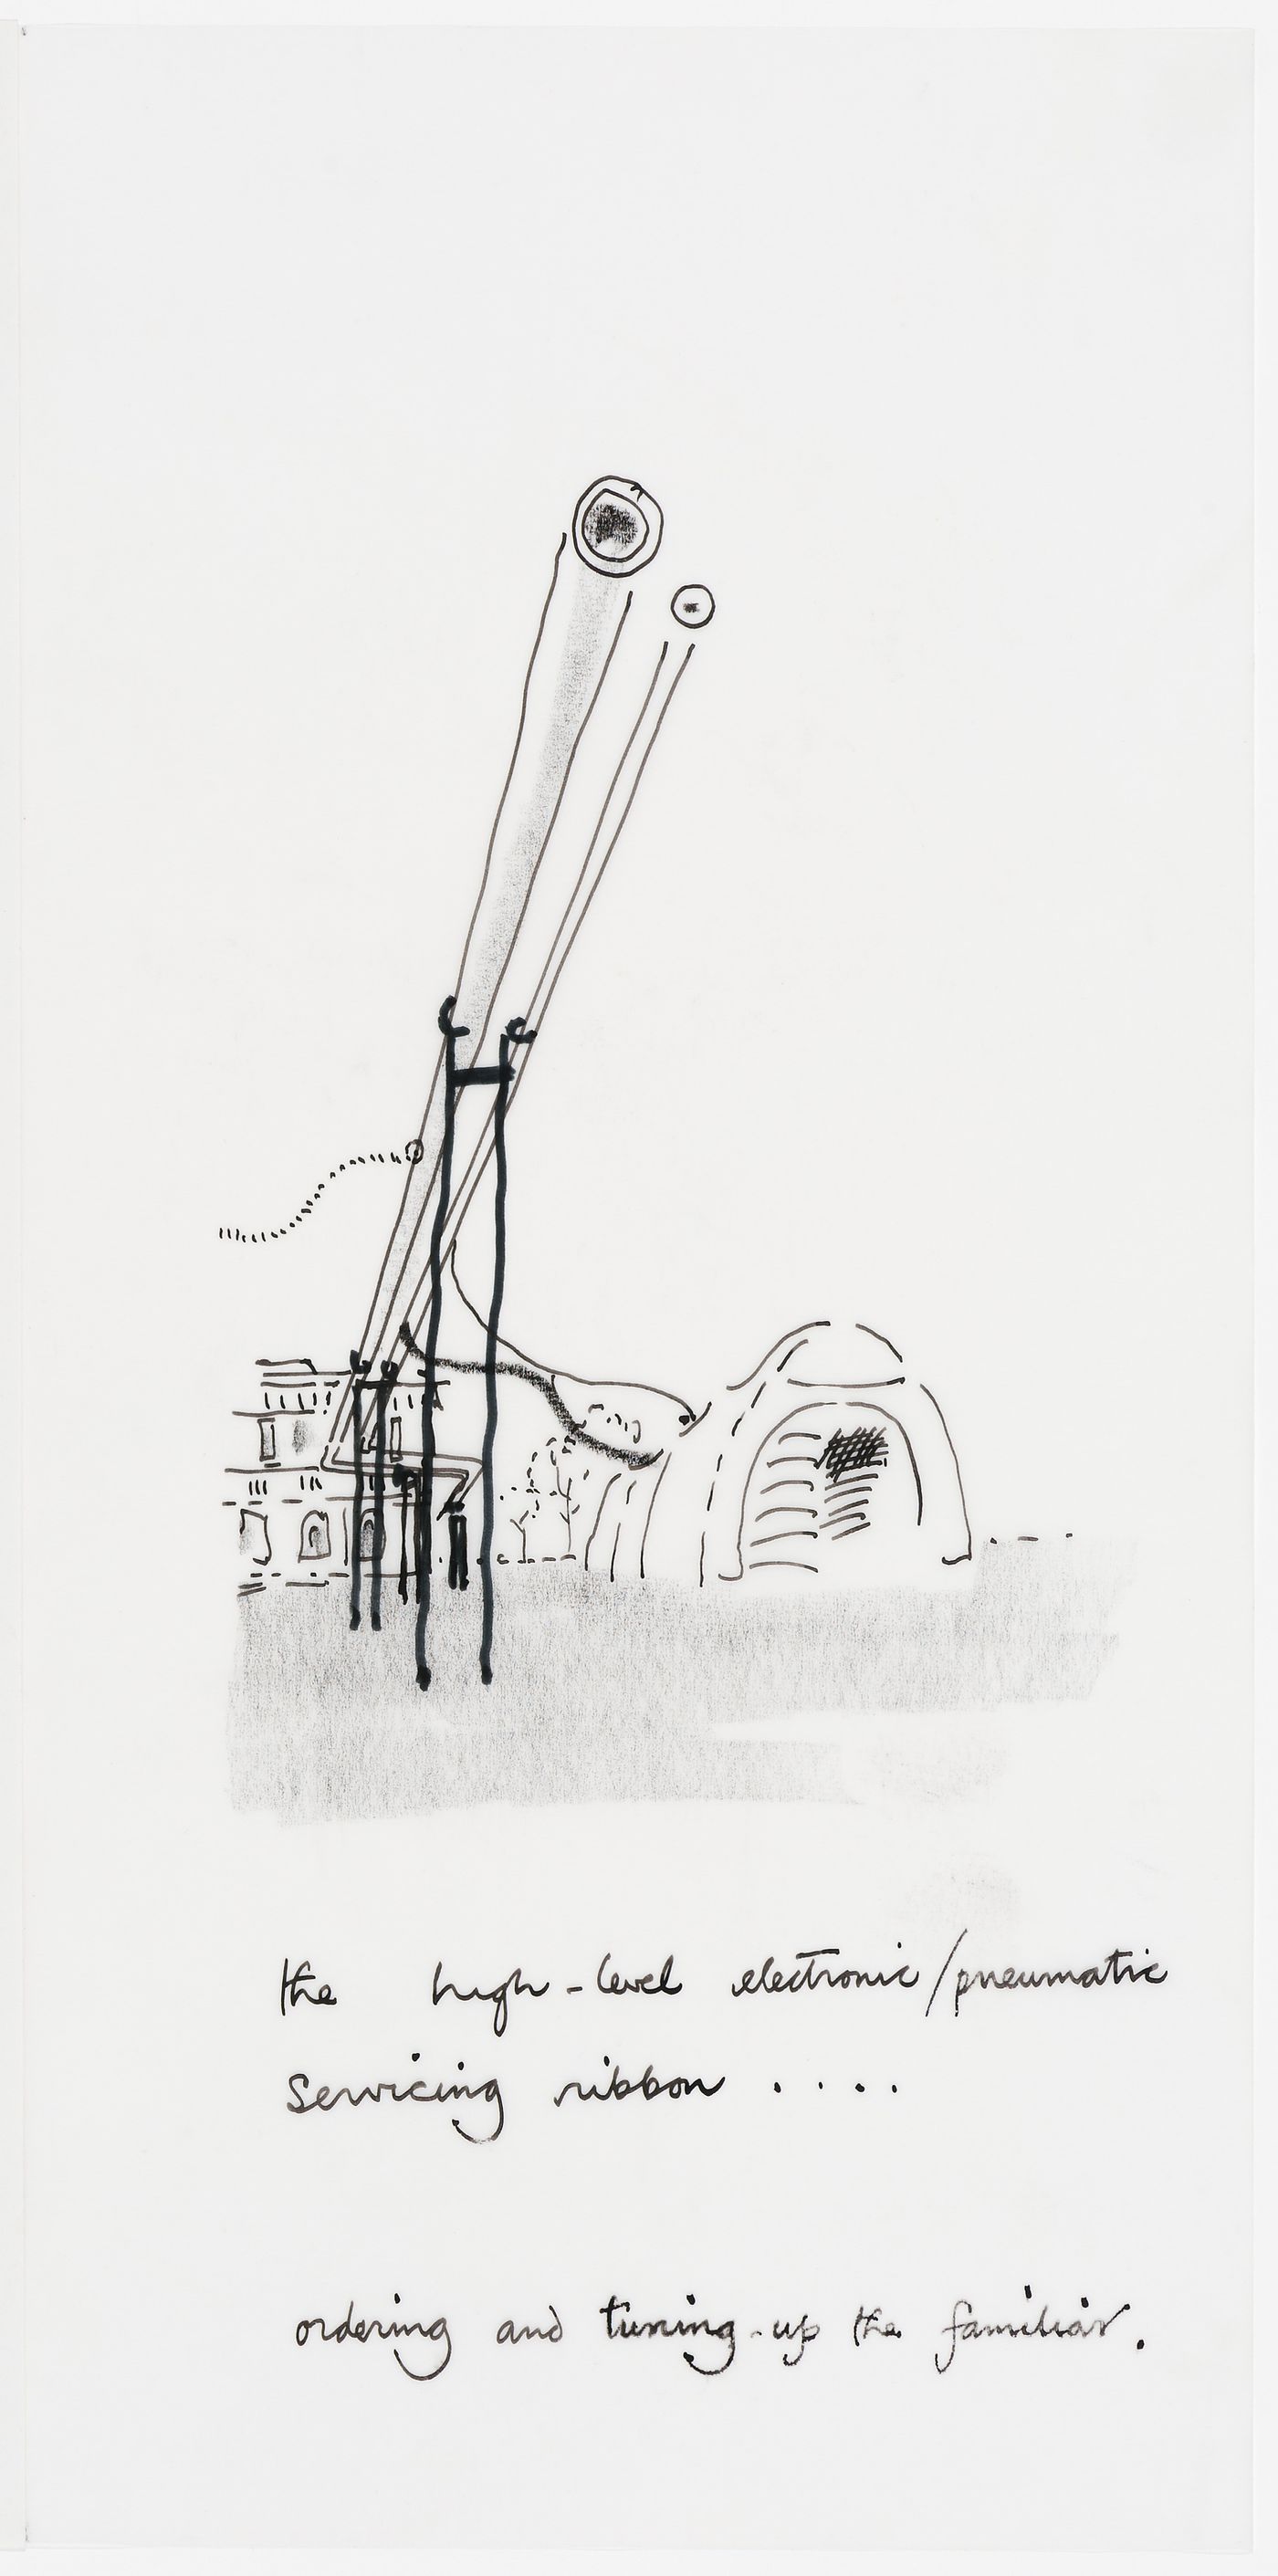 Concours international, Parc de la Villette, Paris: entry by Cedric Price: text with sketch of high-level servicing ribbon